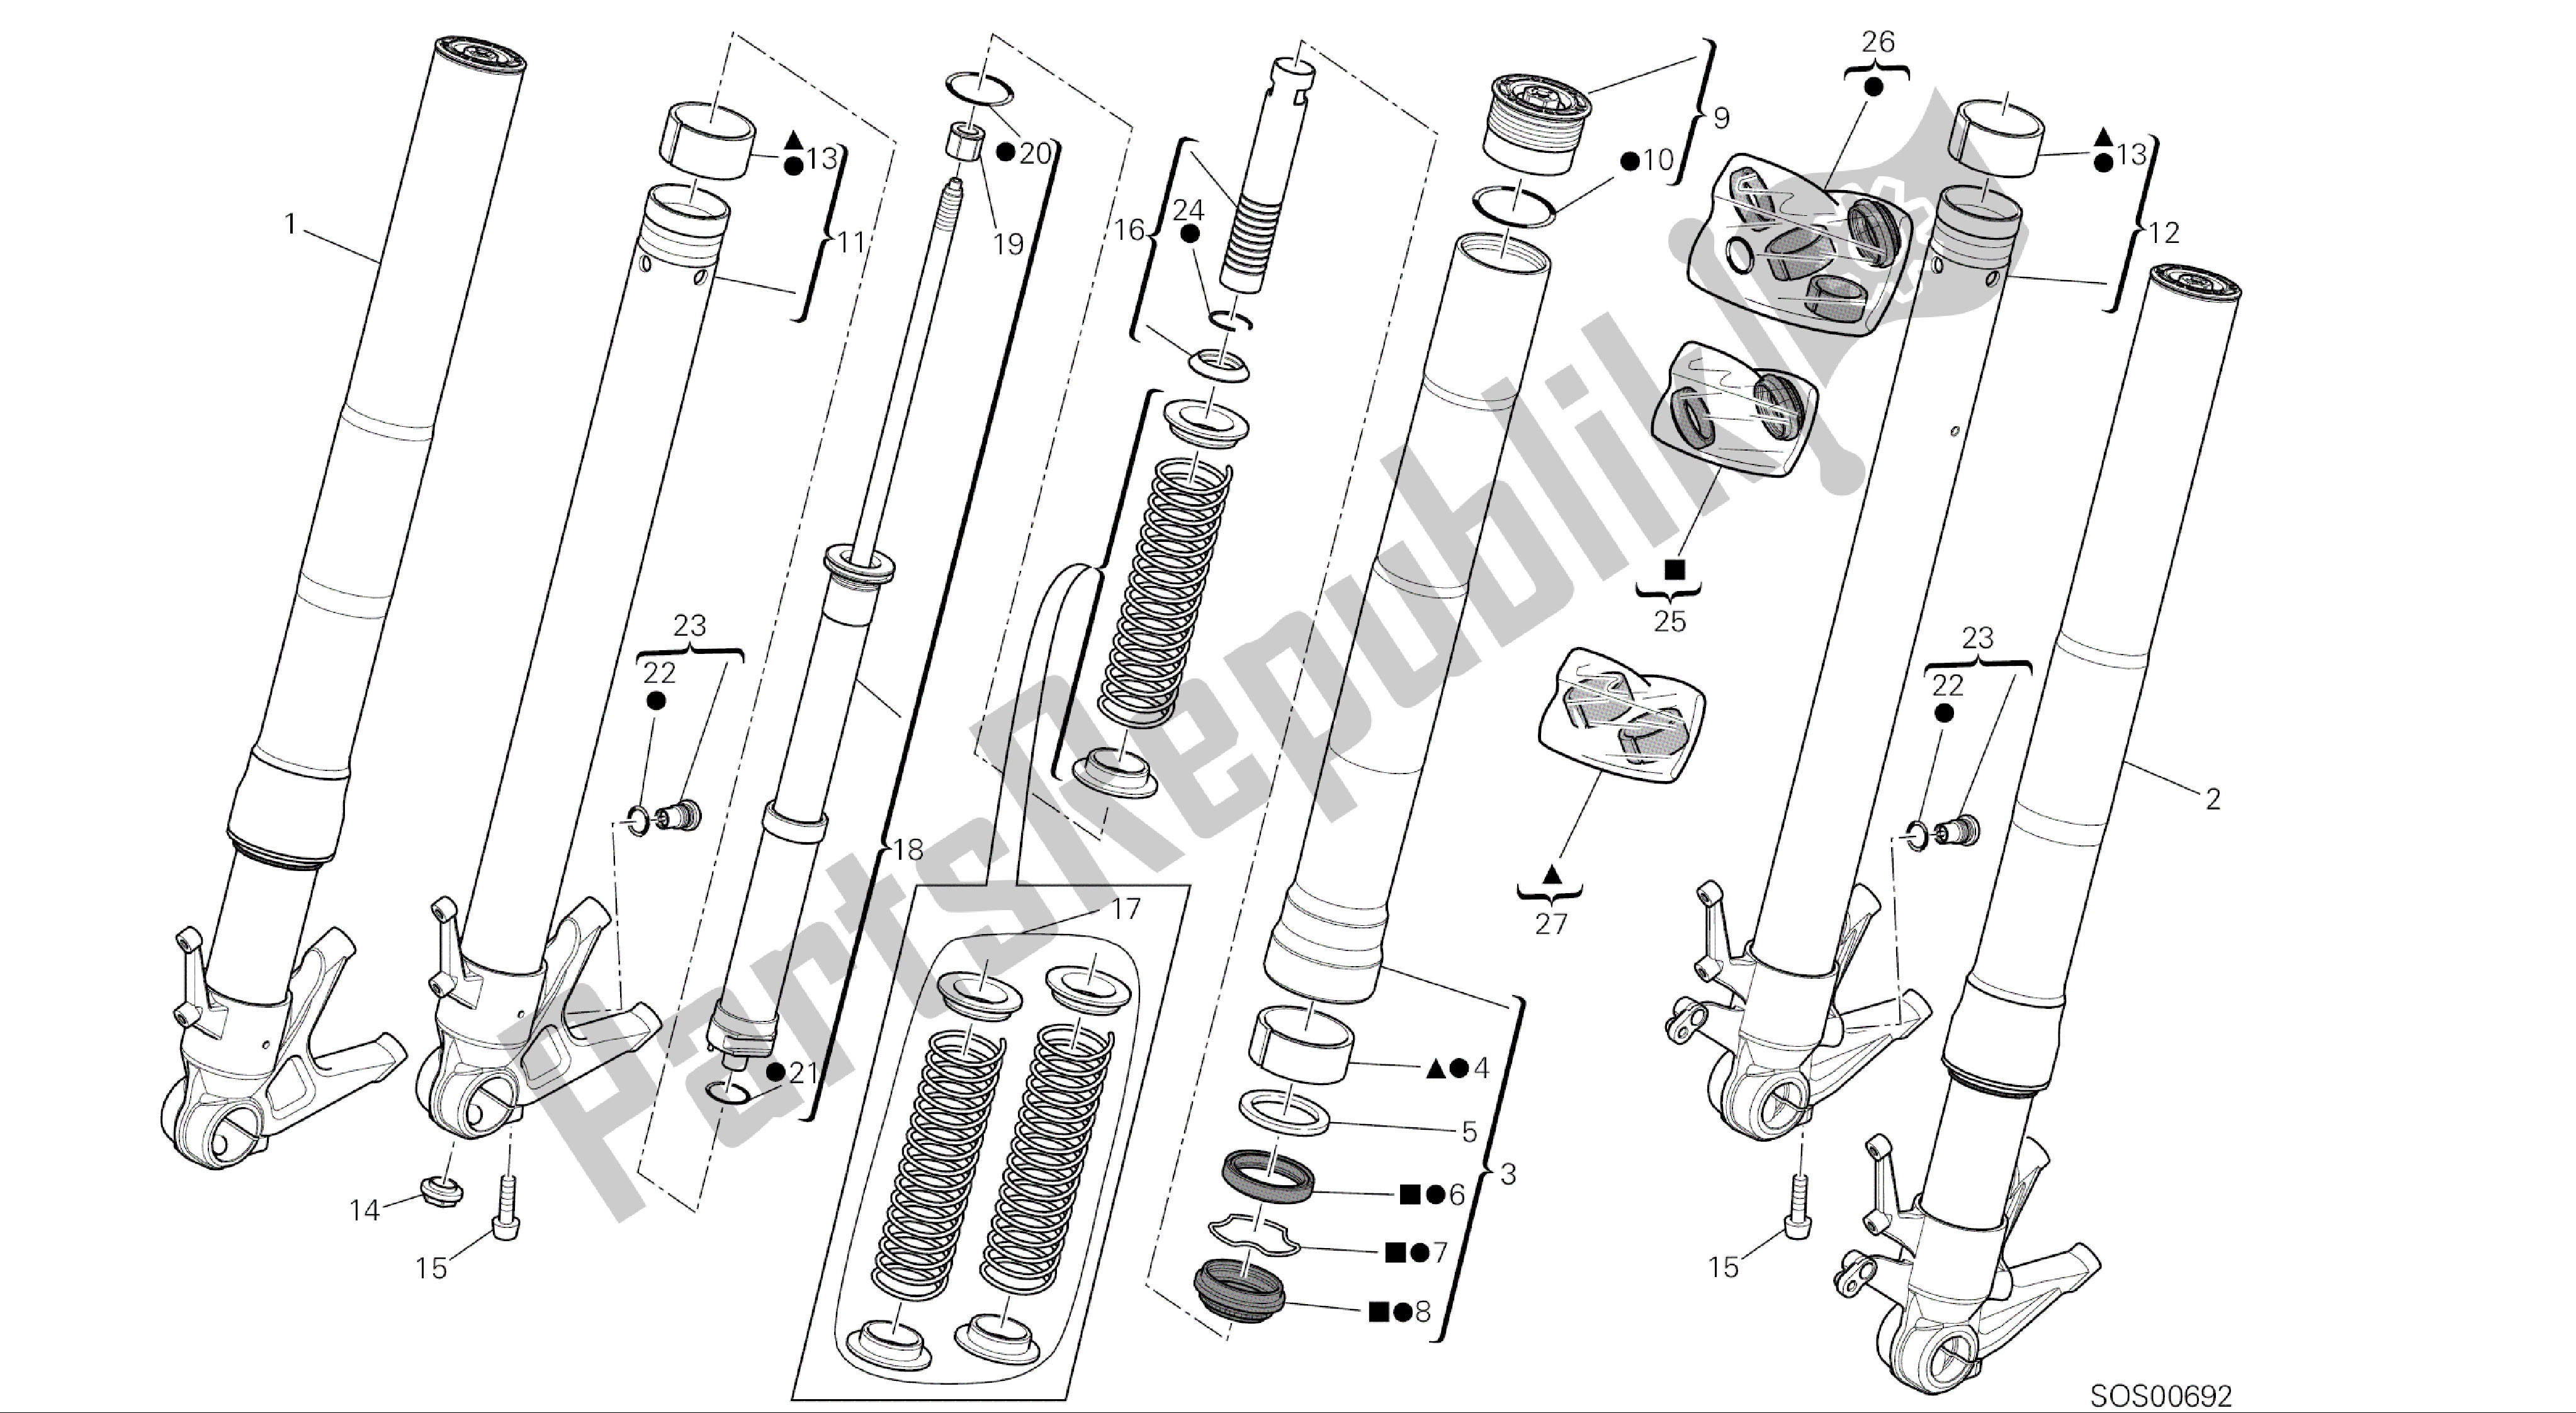 Alle onderdelen voor de Tekening 21a - Voorvork [mod: 1299; Xst: Aus, Eur, Fra, Jap, Twn] Groepsframe van de Ducati Panigale ABS 1299 2016